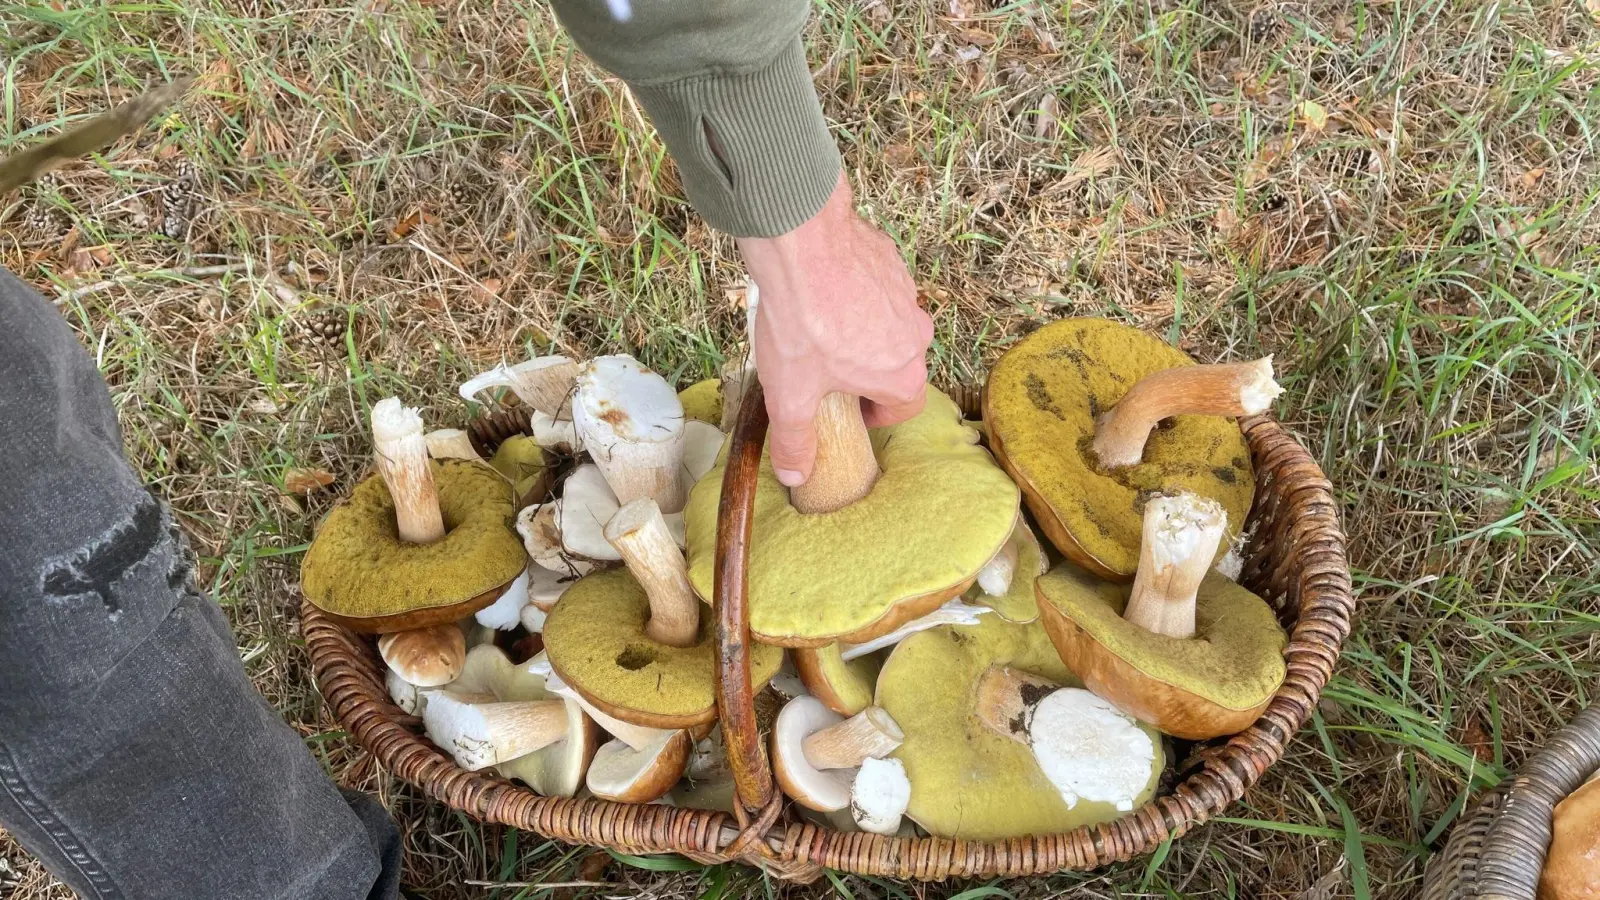 Zahlreiche Pilze liegen in dem Korb eines Pilzsammlers. Der Herbst verspricht mit zunehmenden Niederschlägen eine gute Pilzsaison. (Foto: Lutz Deckwerth/dpa)